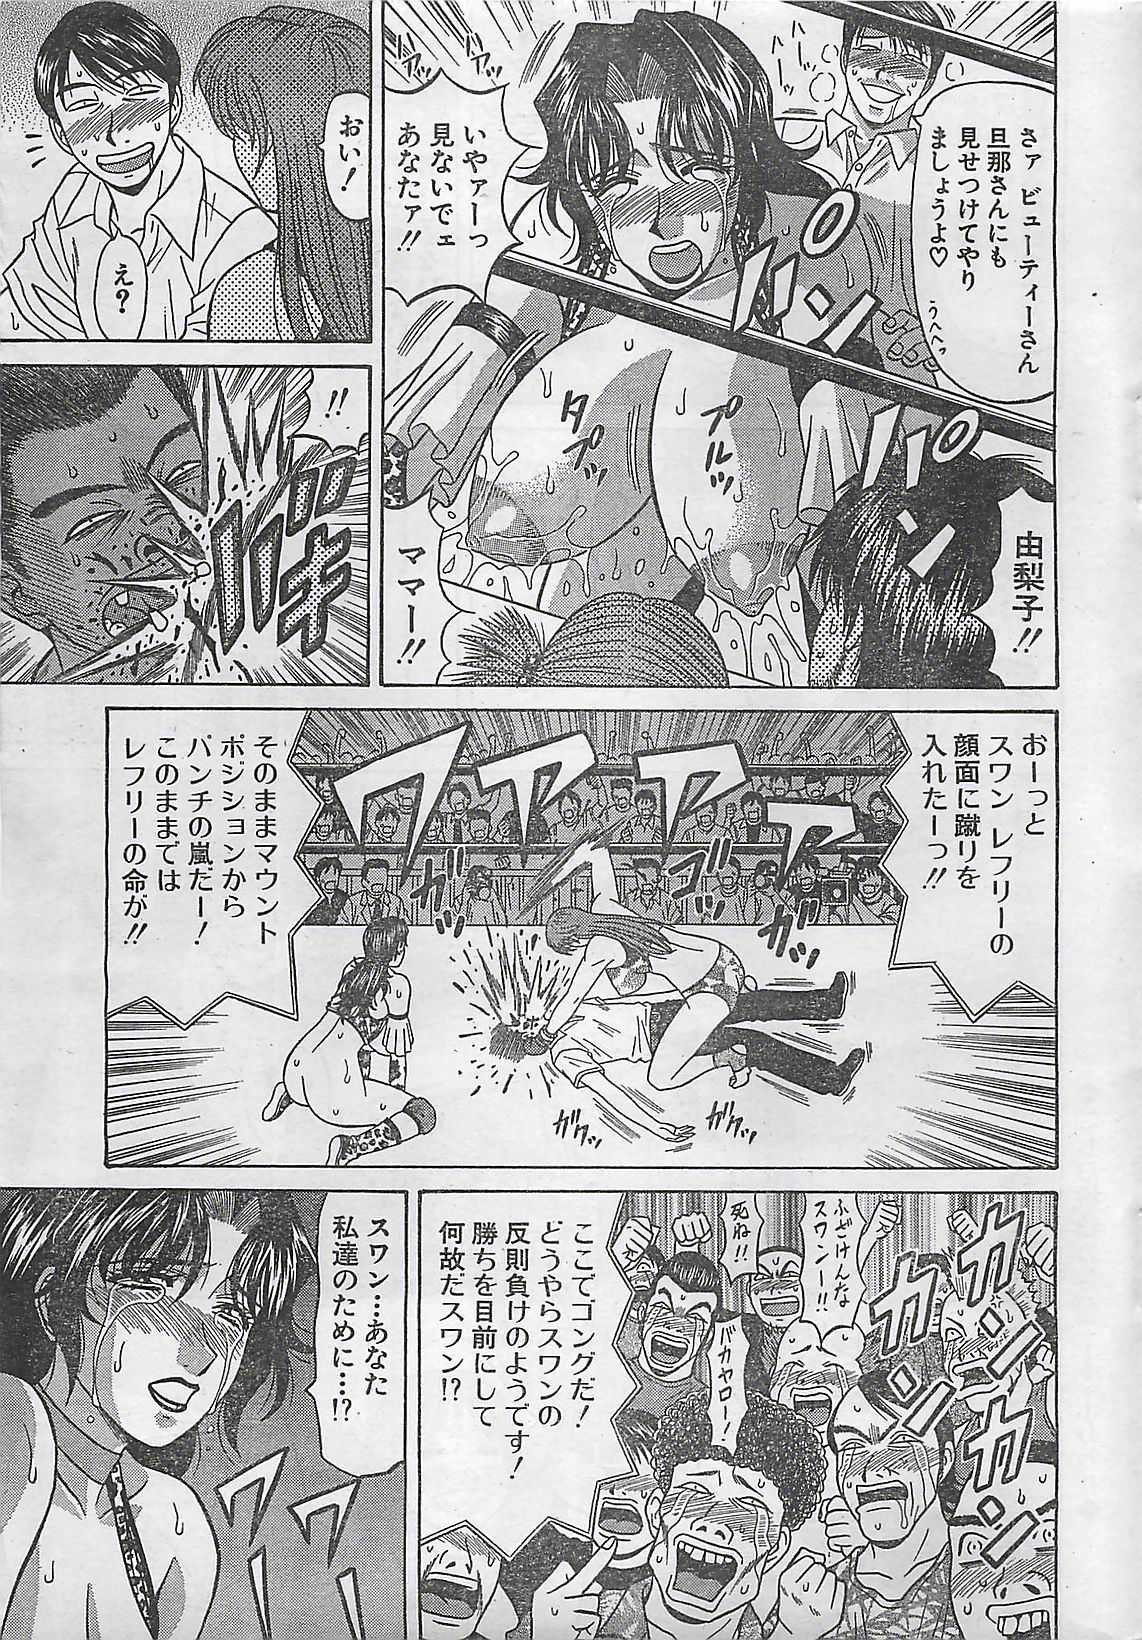 [COMIC]  MANGA ACTION PIZAZZ 2003-09-06 (成年コミック)[雑誌] COMIC 漫画アクションピザッツ 2003年9月6日号